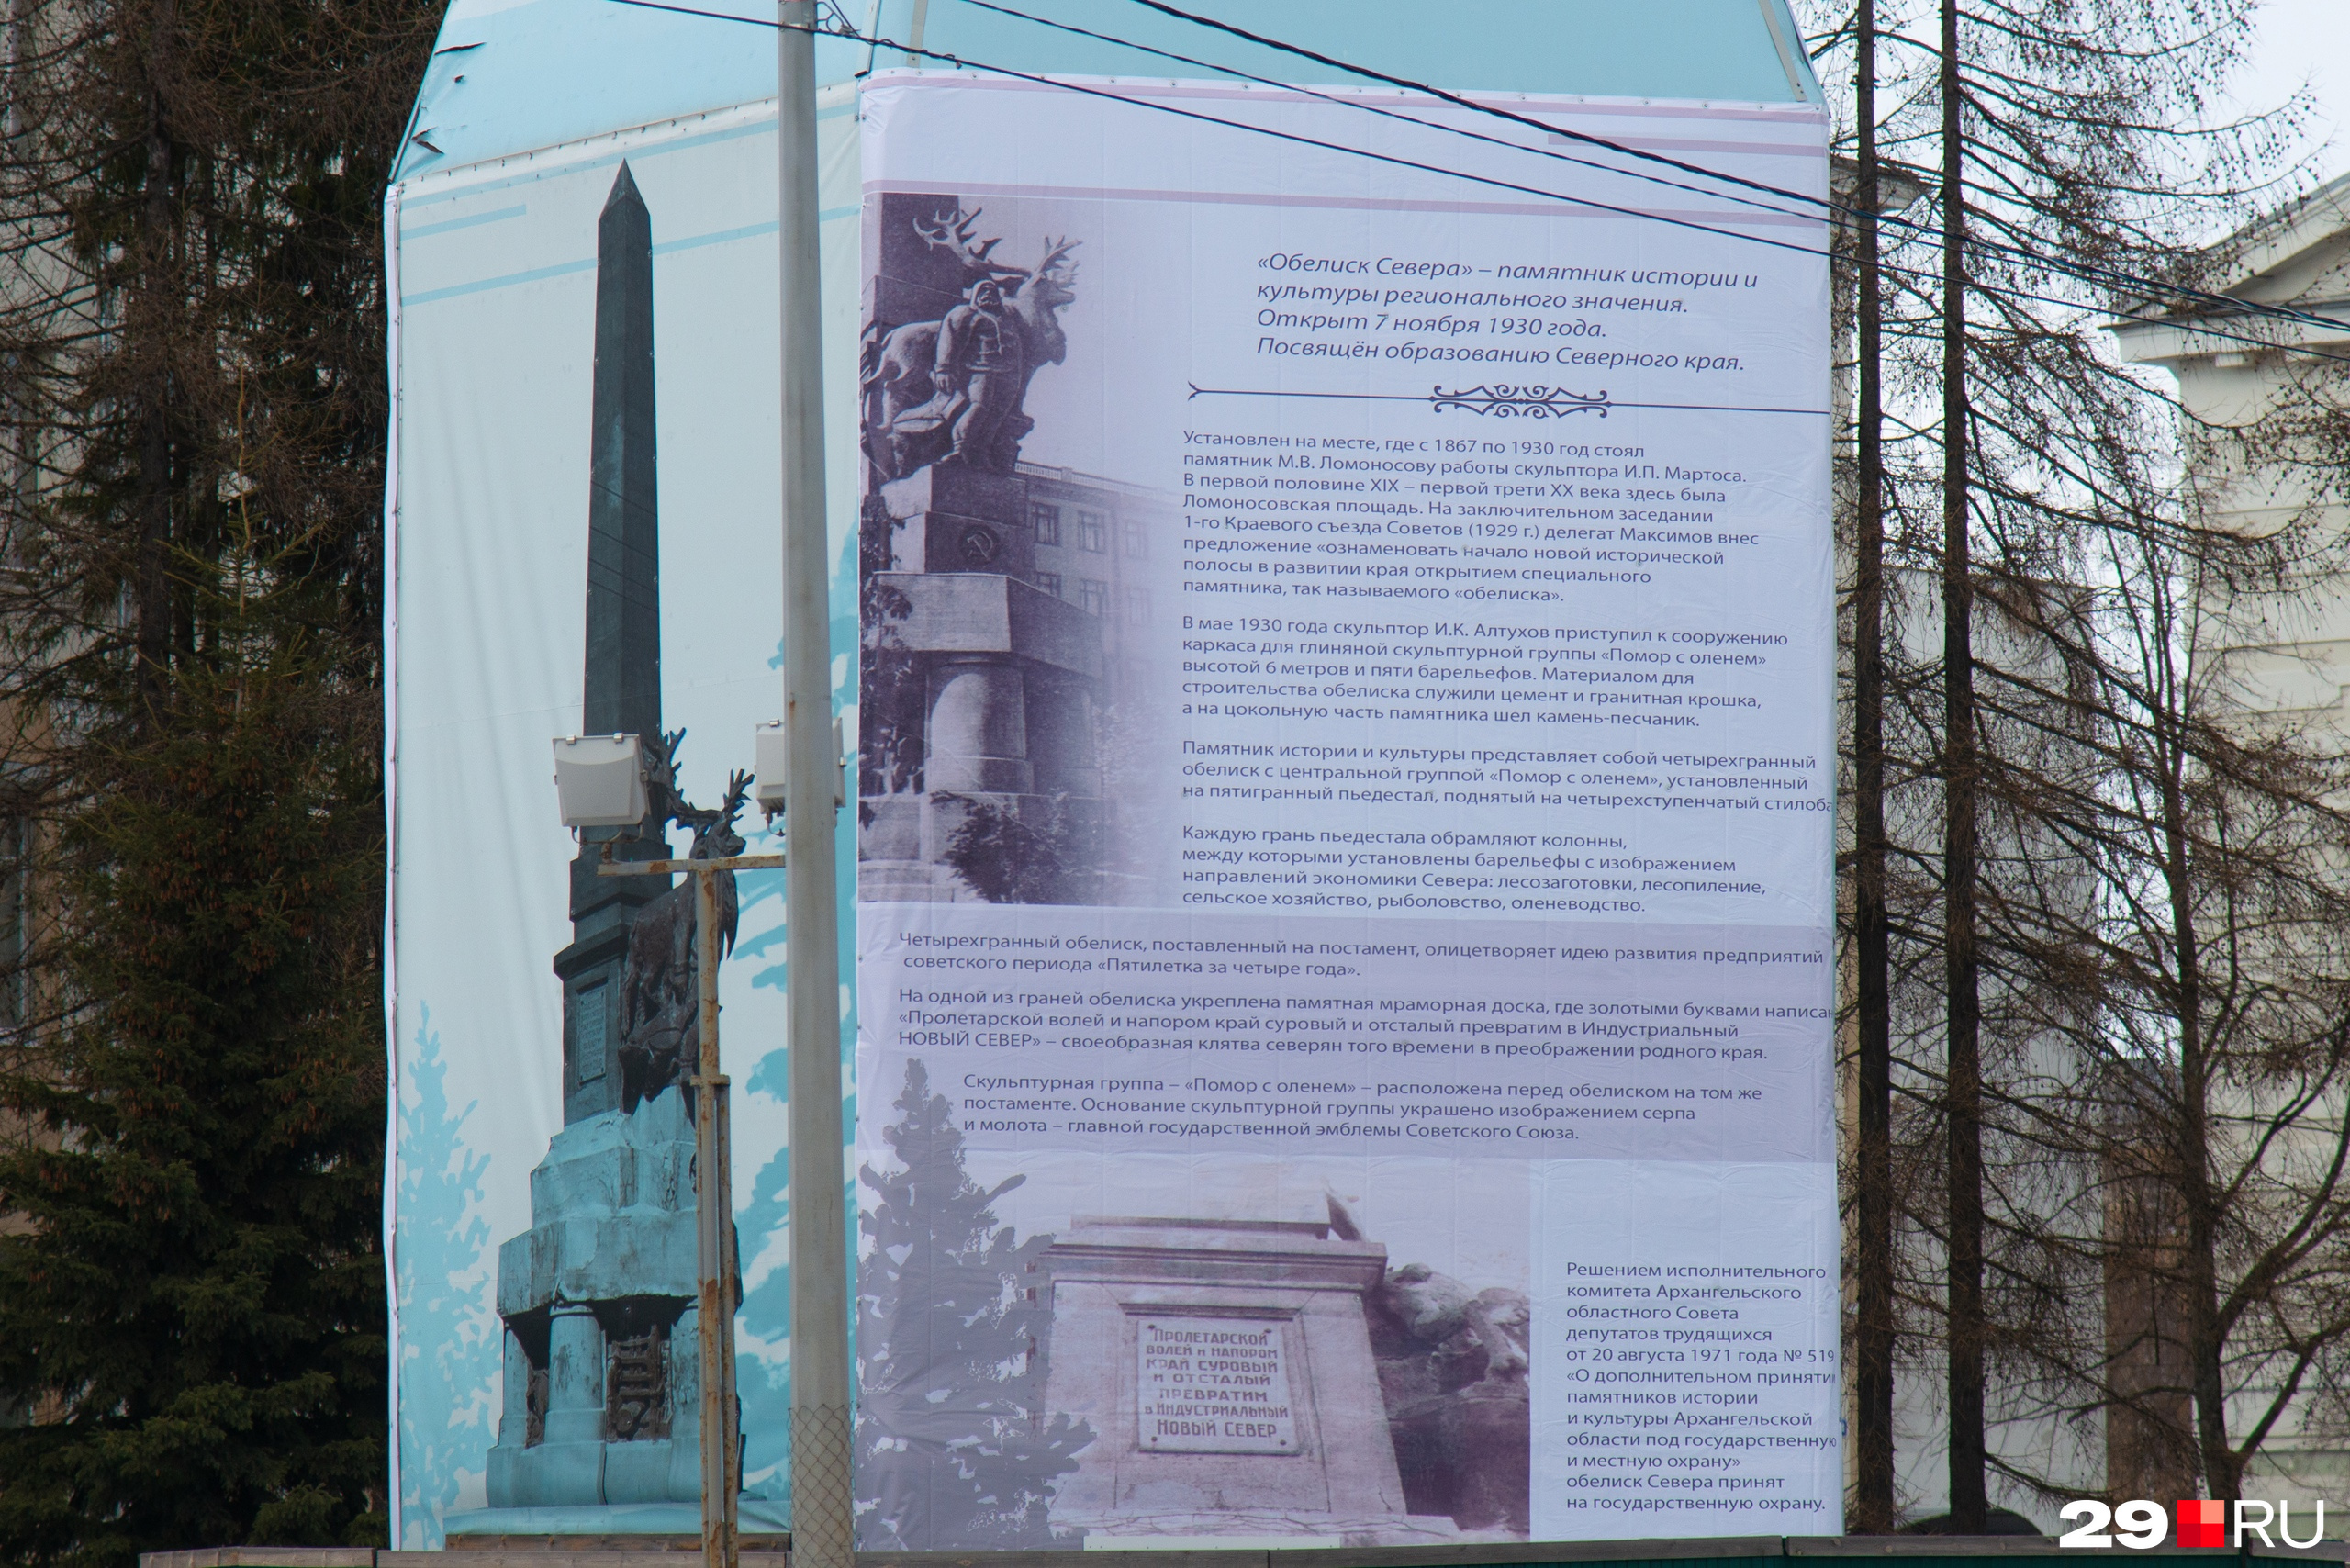 Об истории памятника можно почитать на баннере, которым он укрыт